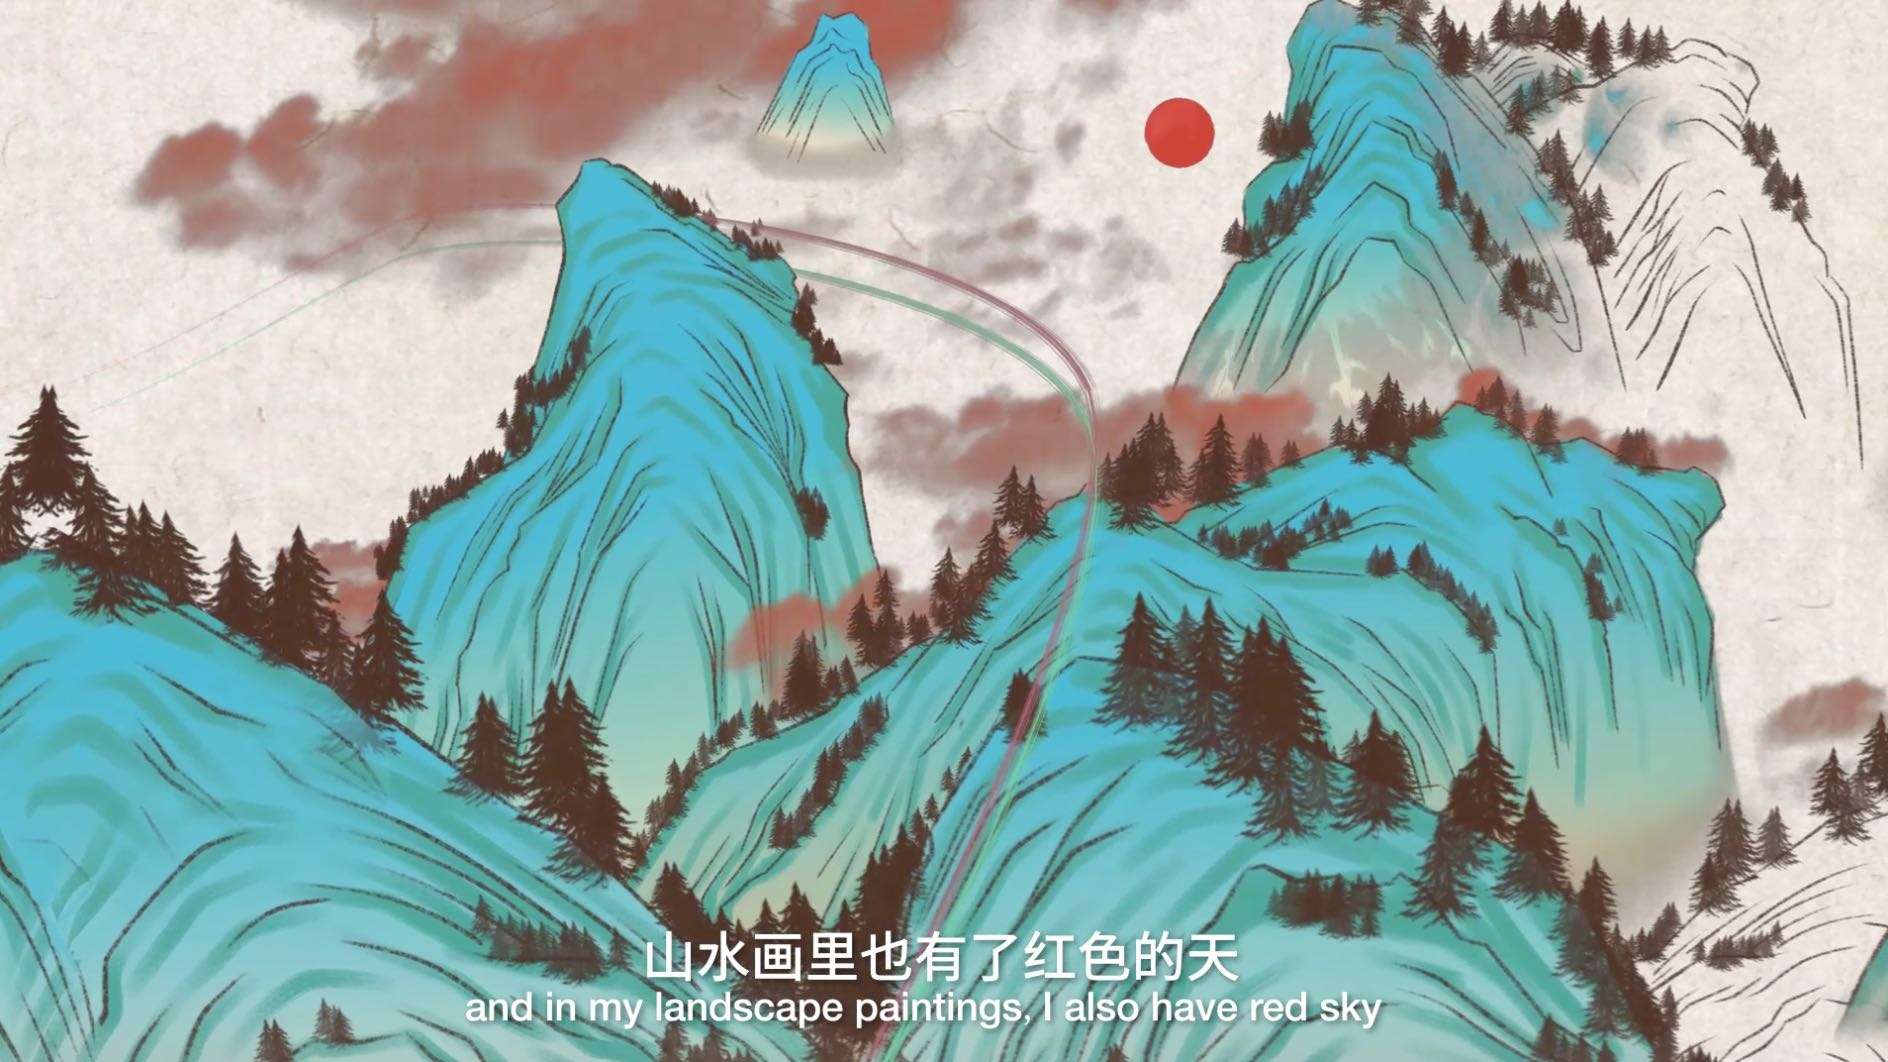 中国风山水画逐帧动画-白金预混液广告